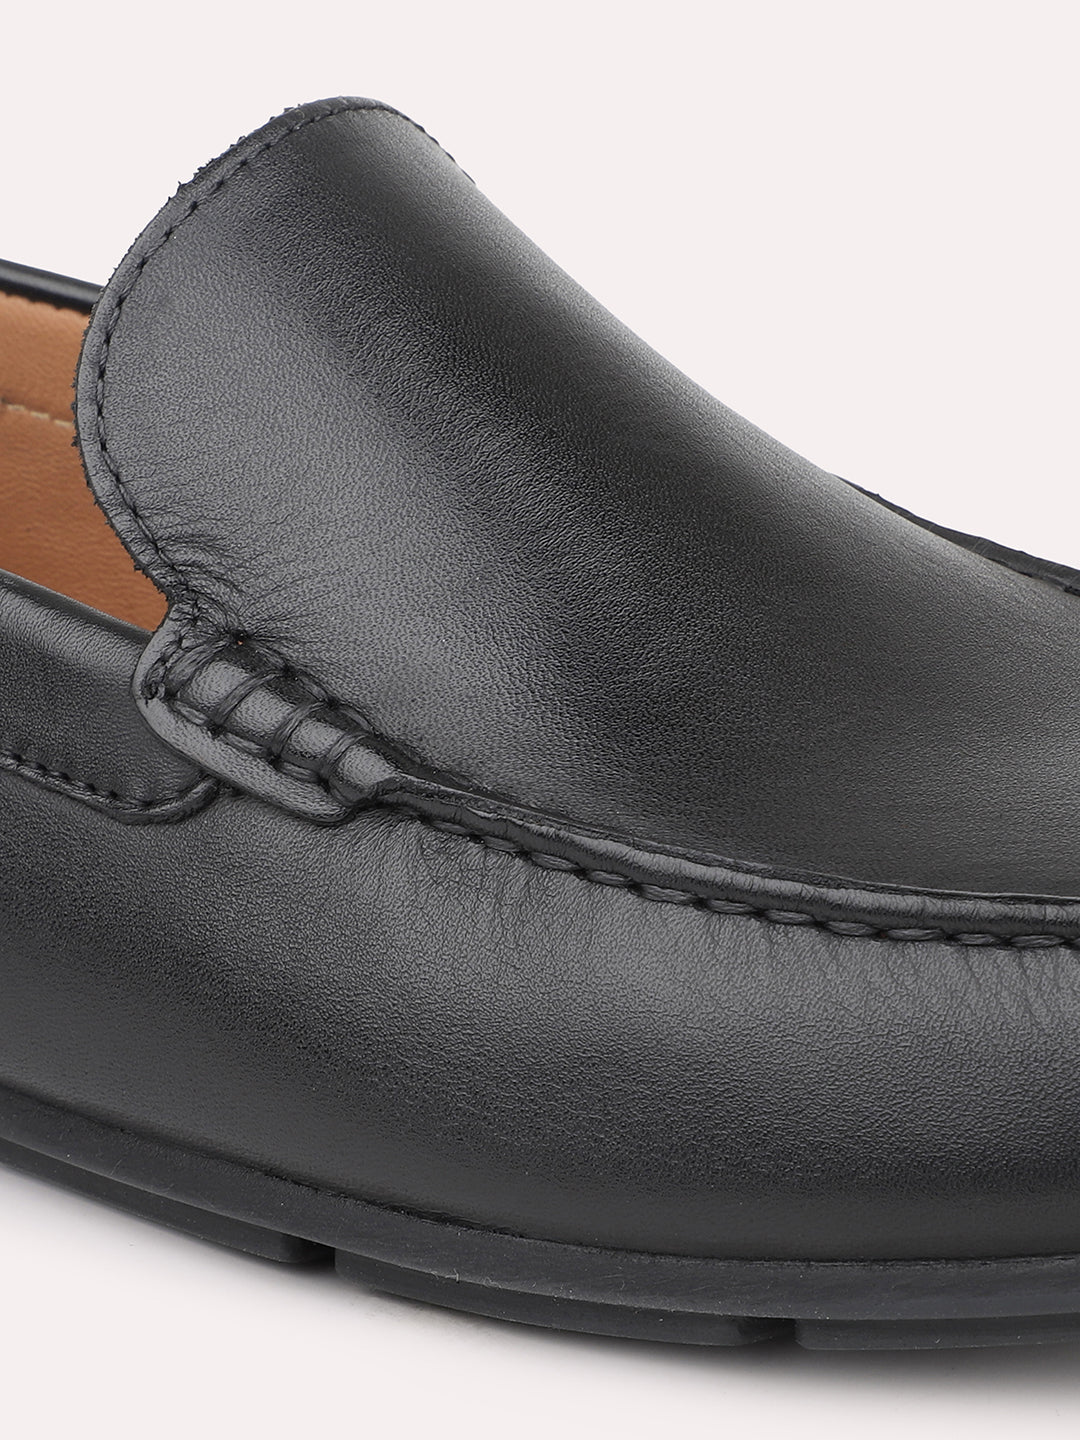 Atesber Black Solid Loafer Shoes For Men